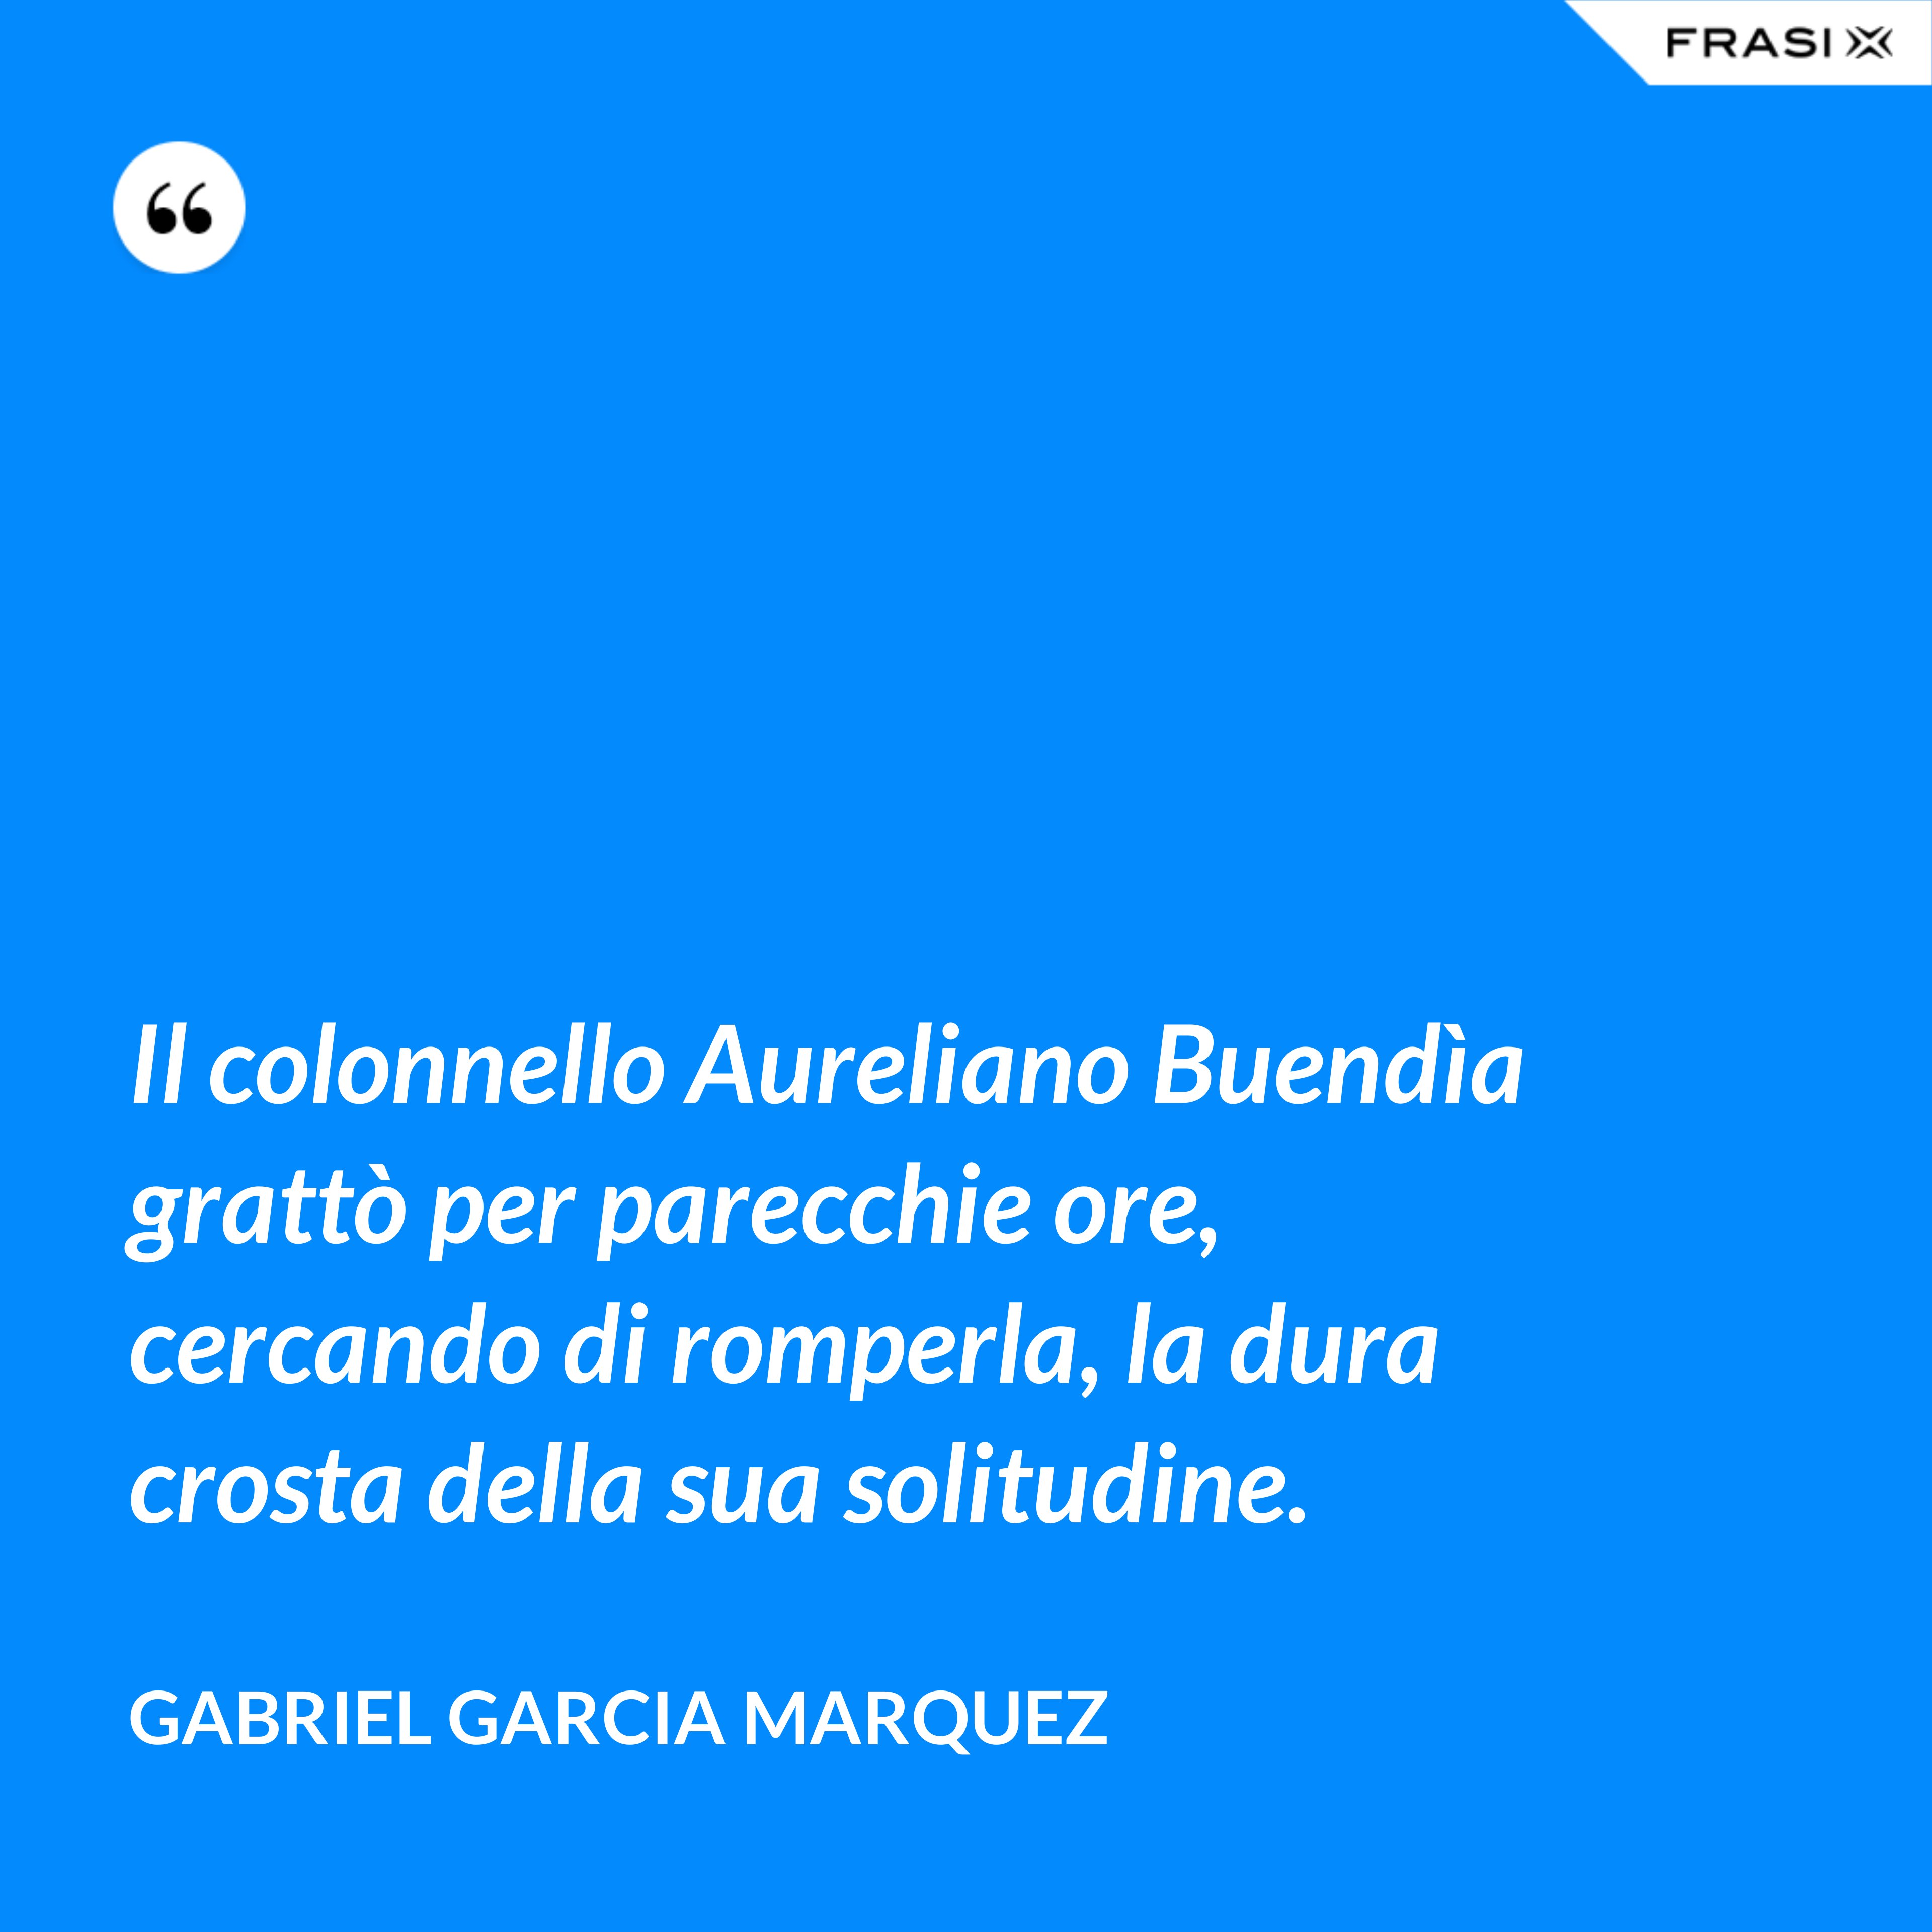 Il colonnello Aureliano Buendìa grattò per parecchie ore, cercando di romperla, la dura crosta della sua solitudine. - Gabriel Garcia Marquez